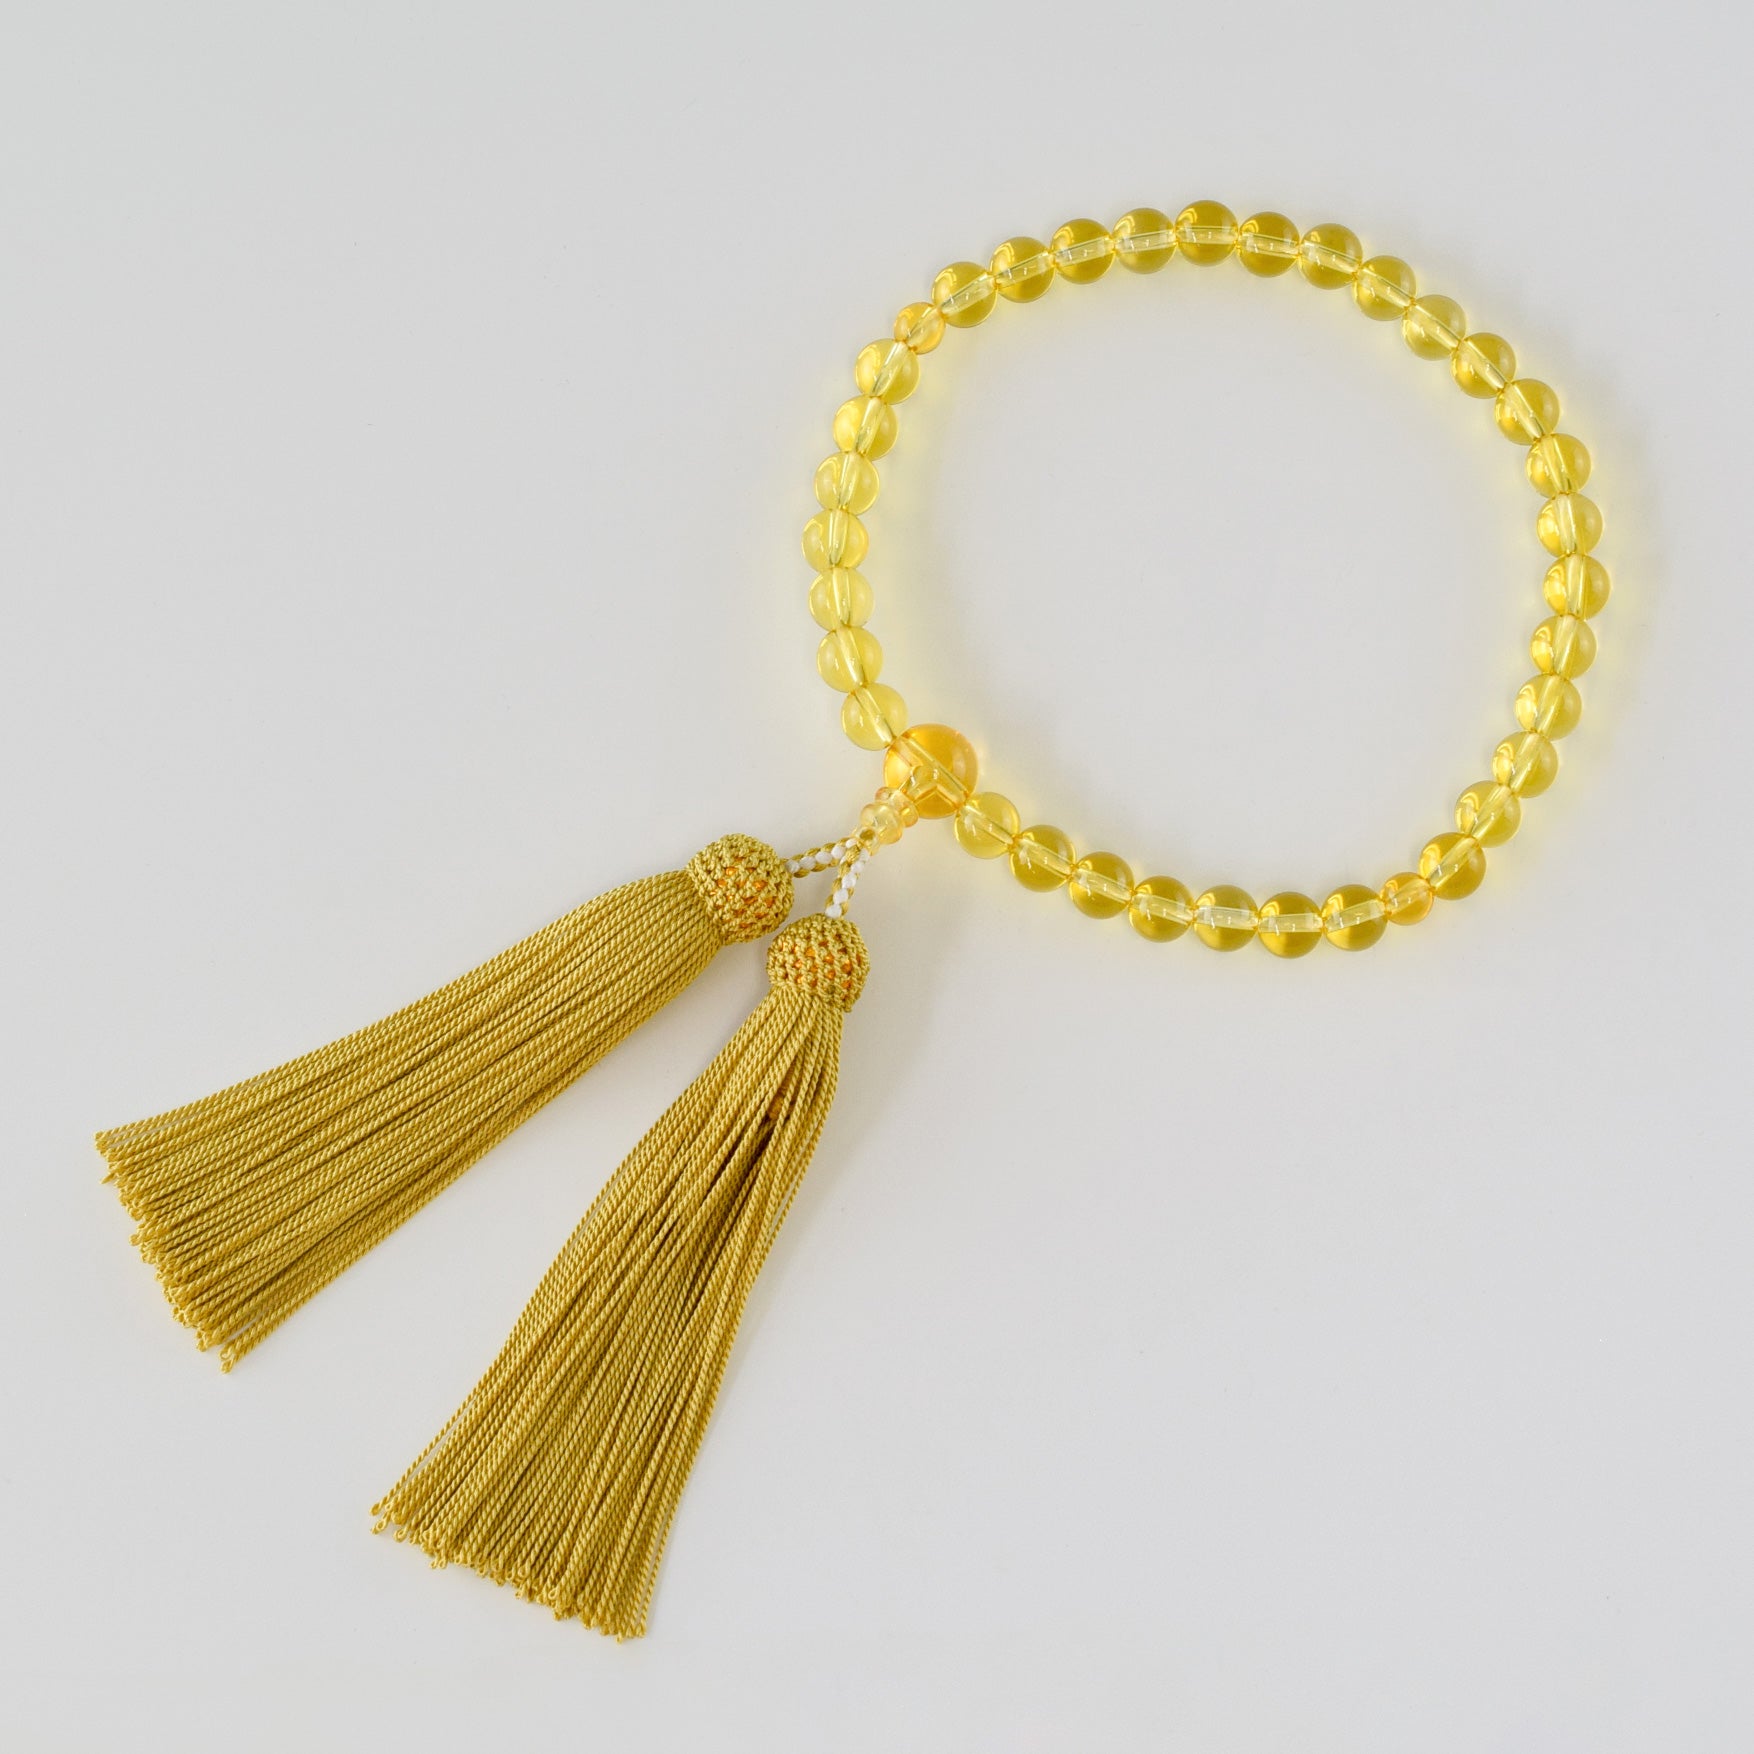 Yellow Topaz Juzu Prayer beads